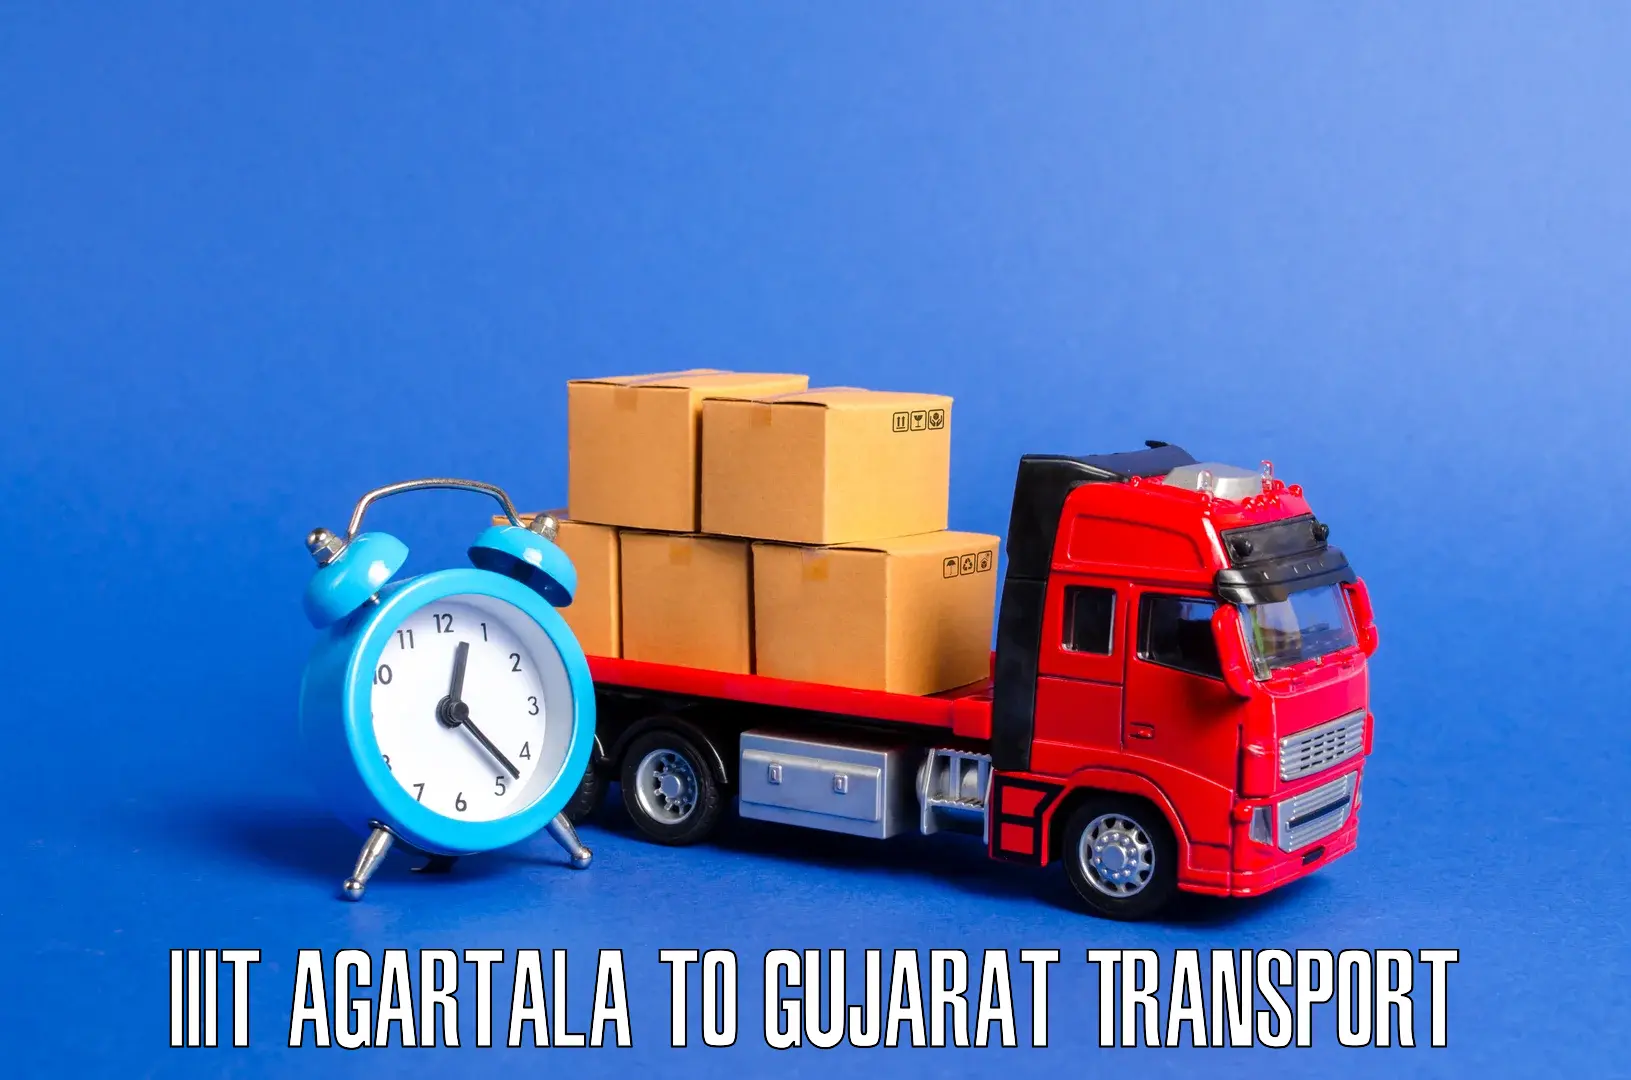 Nearest transport service IIIT Agartala to Tarapur